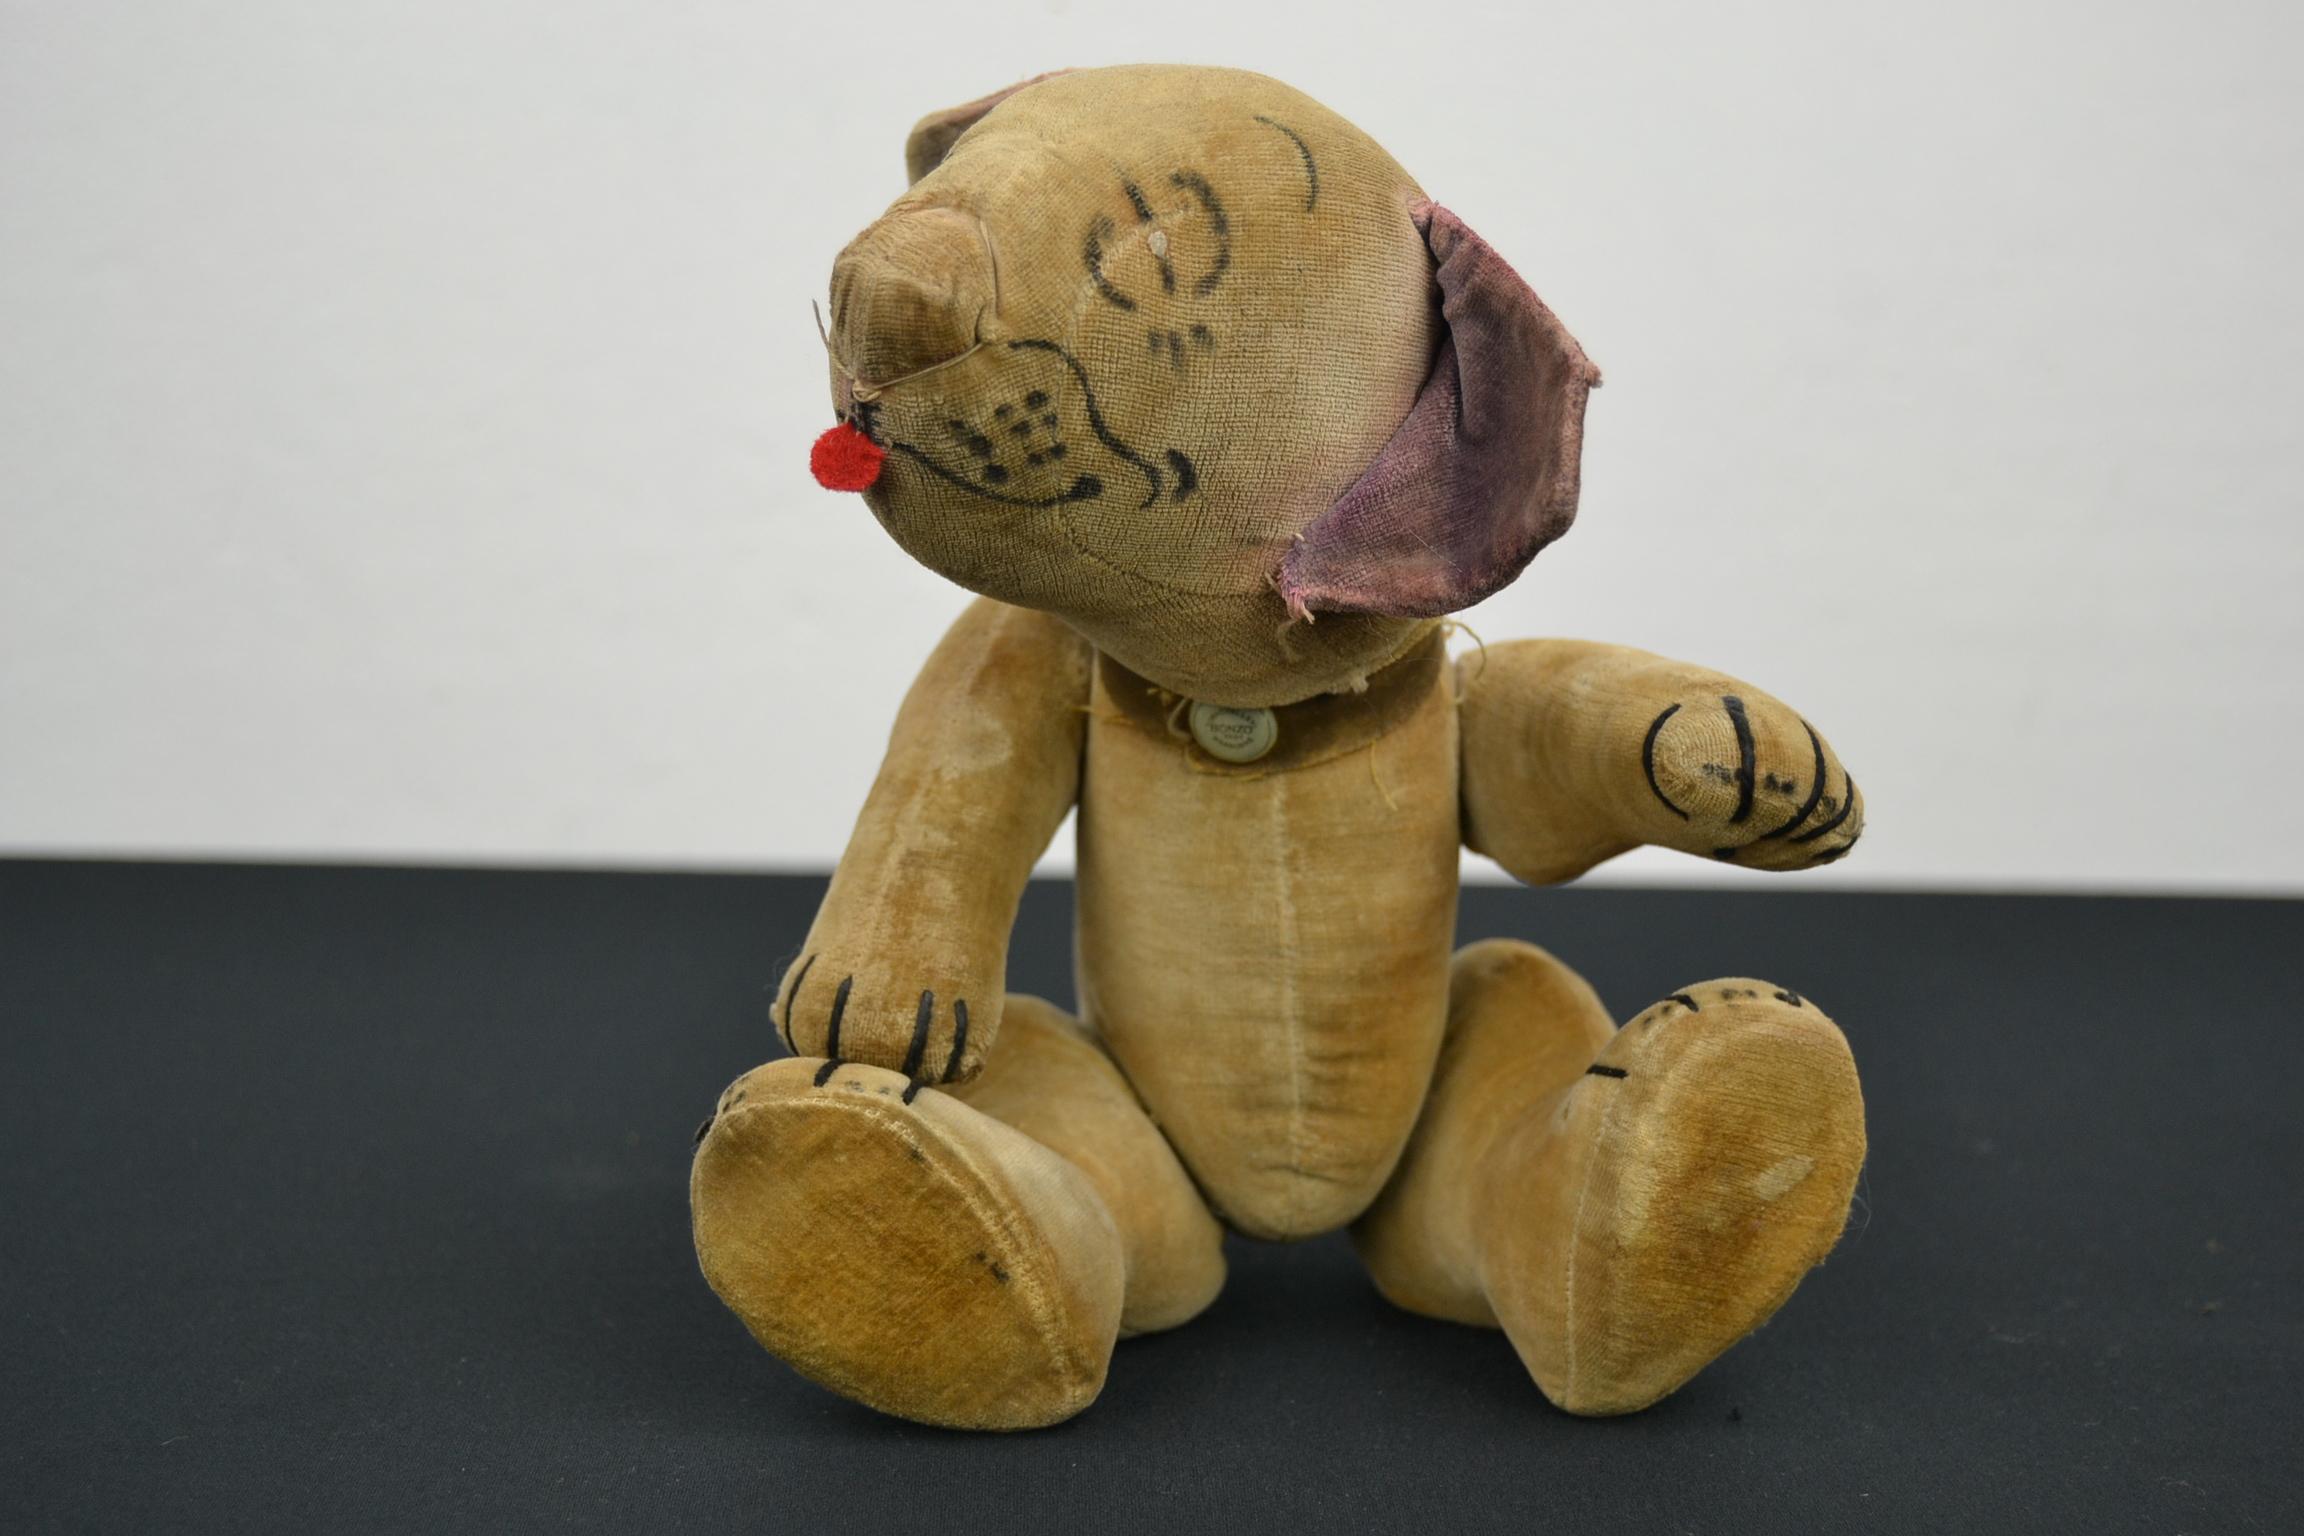 Chad valley comic Bonzo toy dog des années 1930.
Ce jouet Bonzo en velours crème entièrement articulé a des traits peints à l'aérographe et une langue en feutre rouge.
Il est articulé au niveau du cou, des épaules et des hanches, ses griffes sont